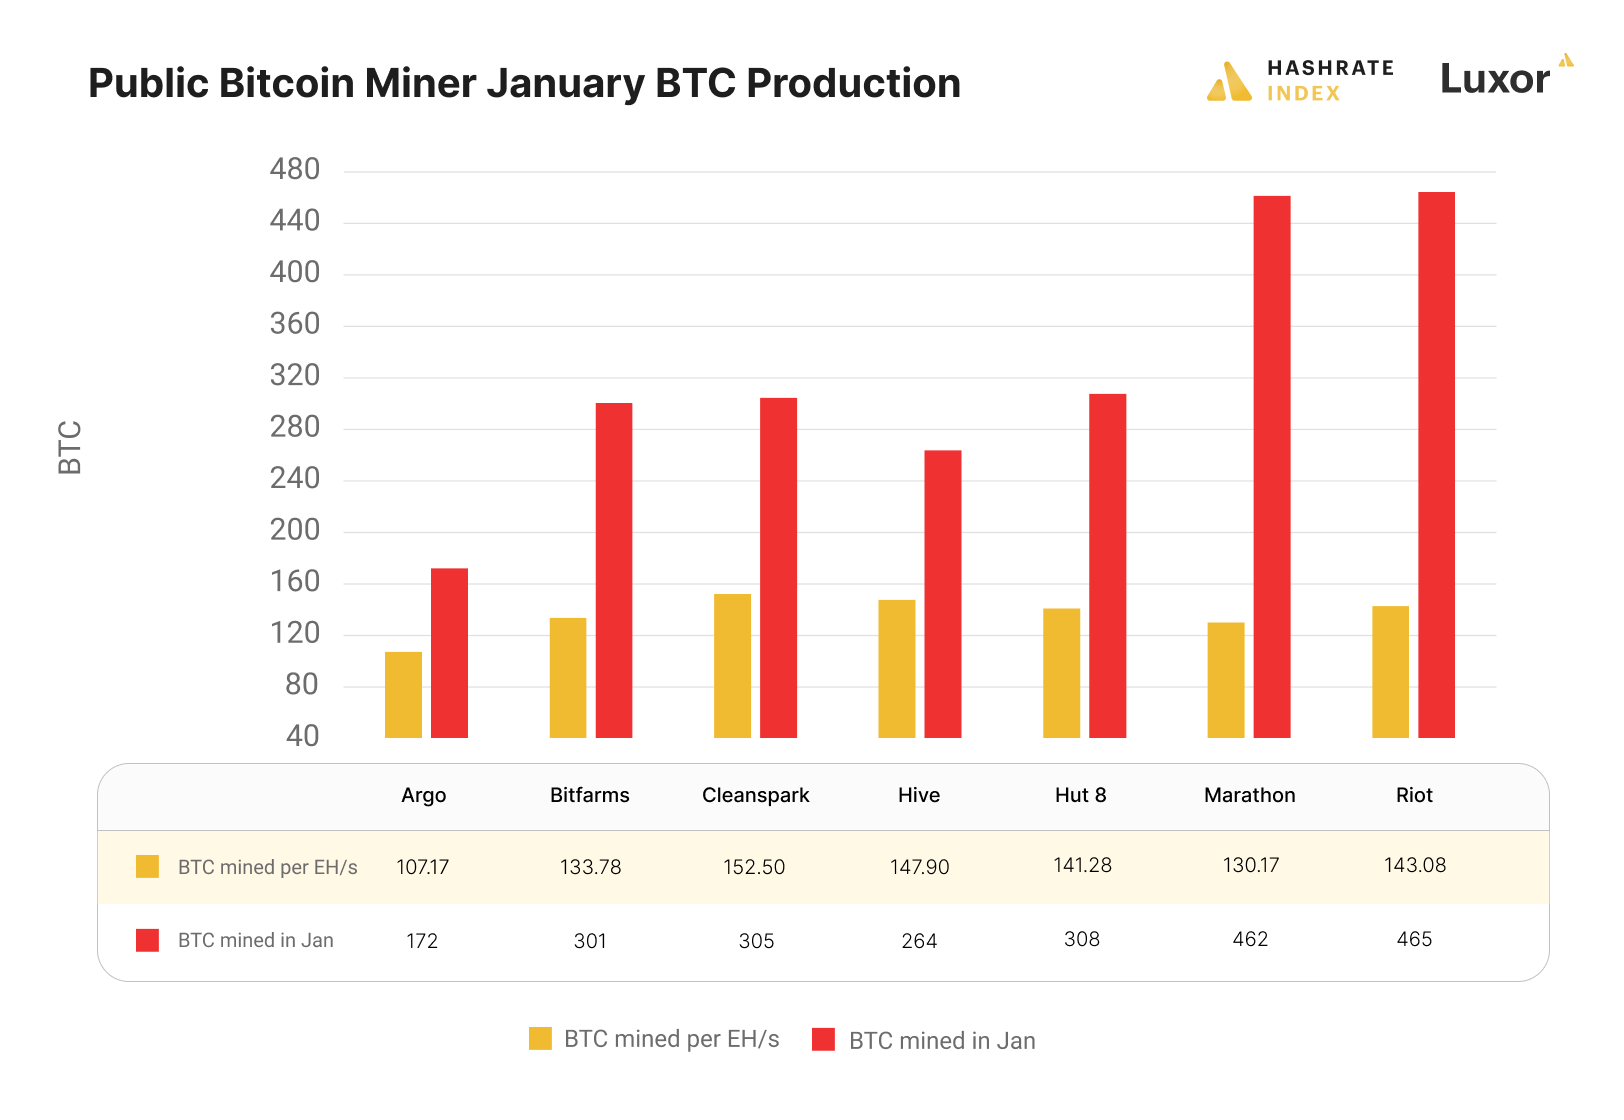 Bitcoin miner January productions